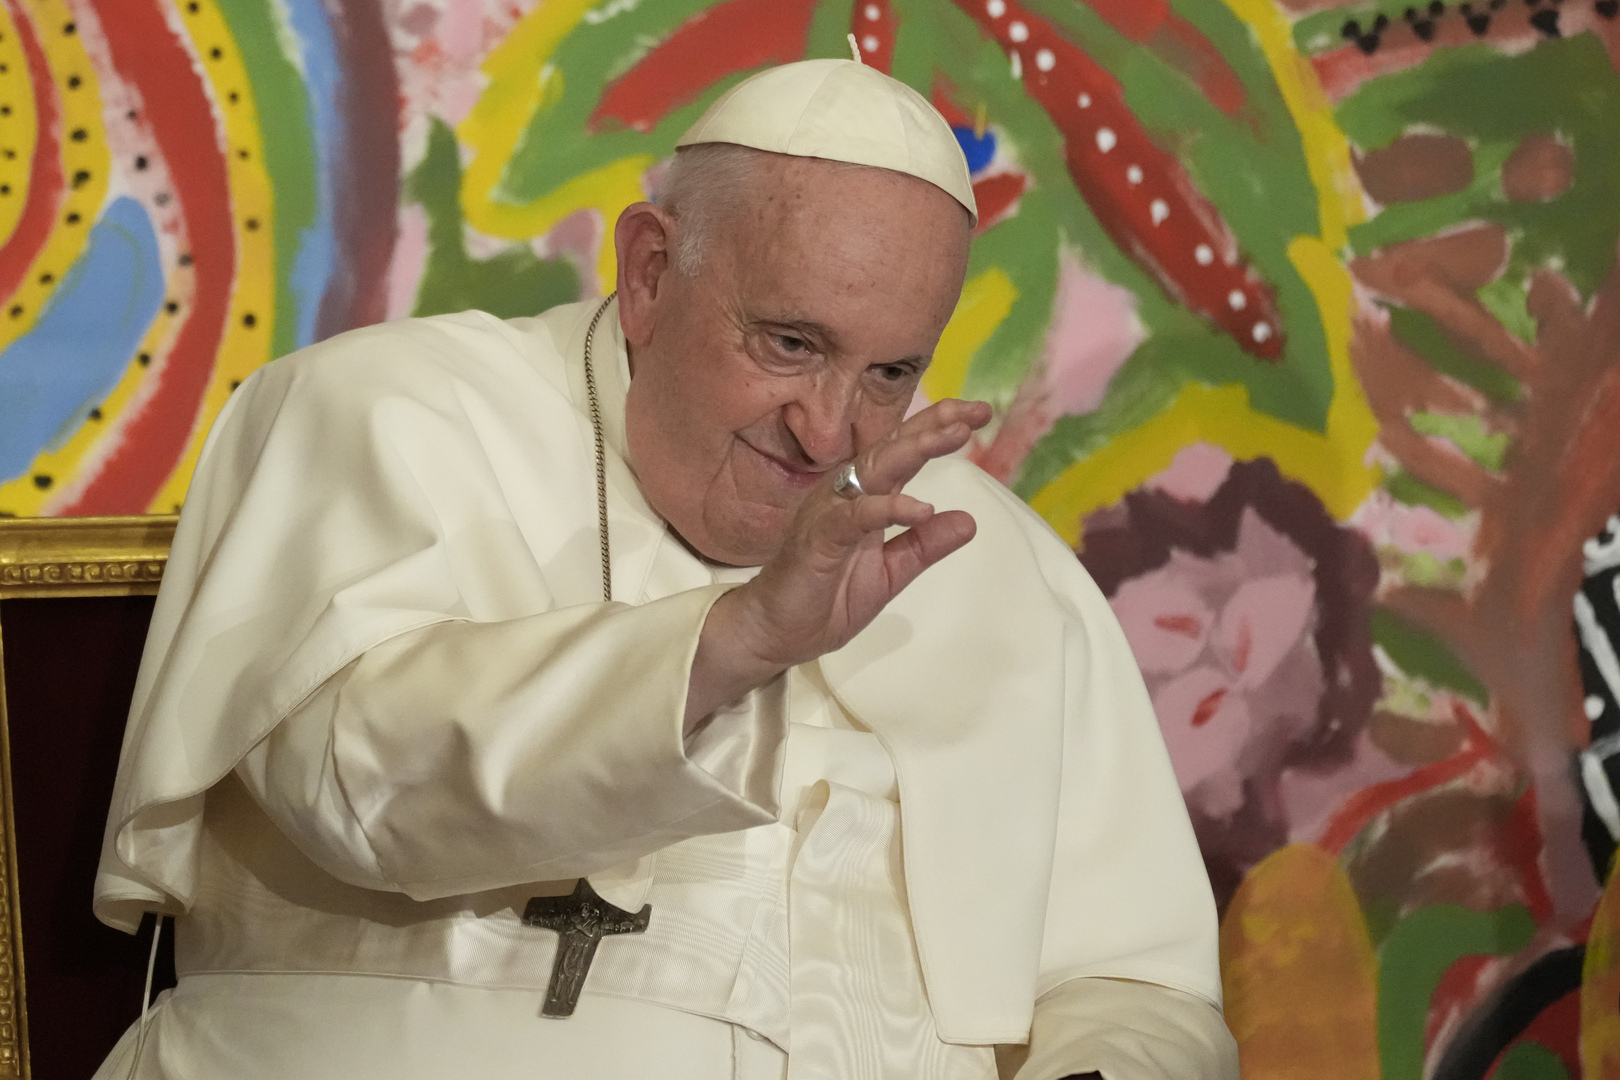 الفاتيكان يعلن مرض البابا فرنسيس ويلغي مواعيده